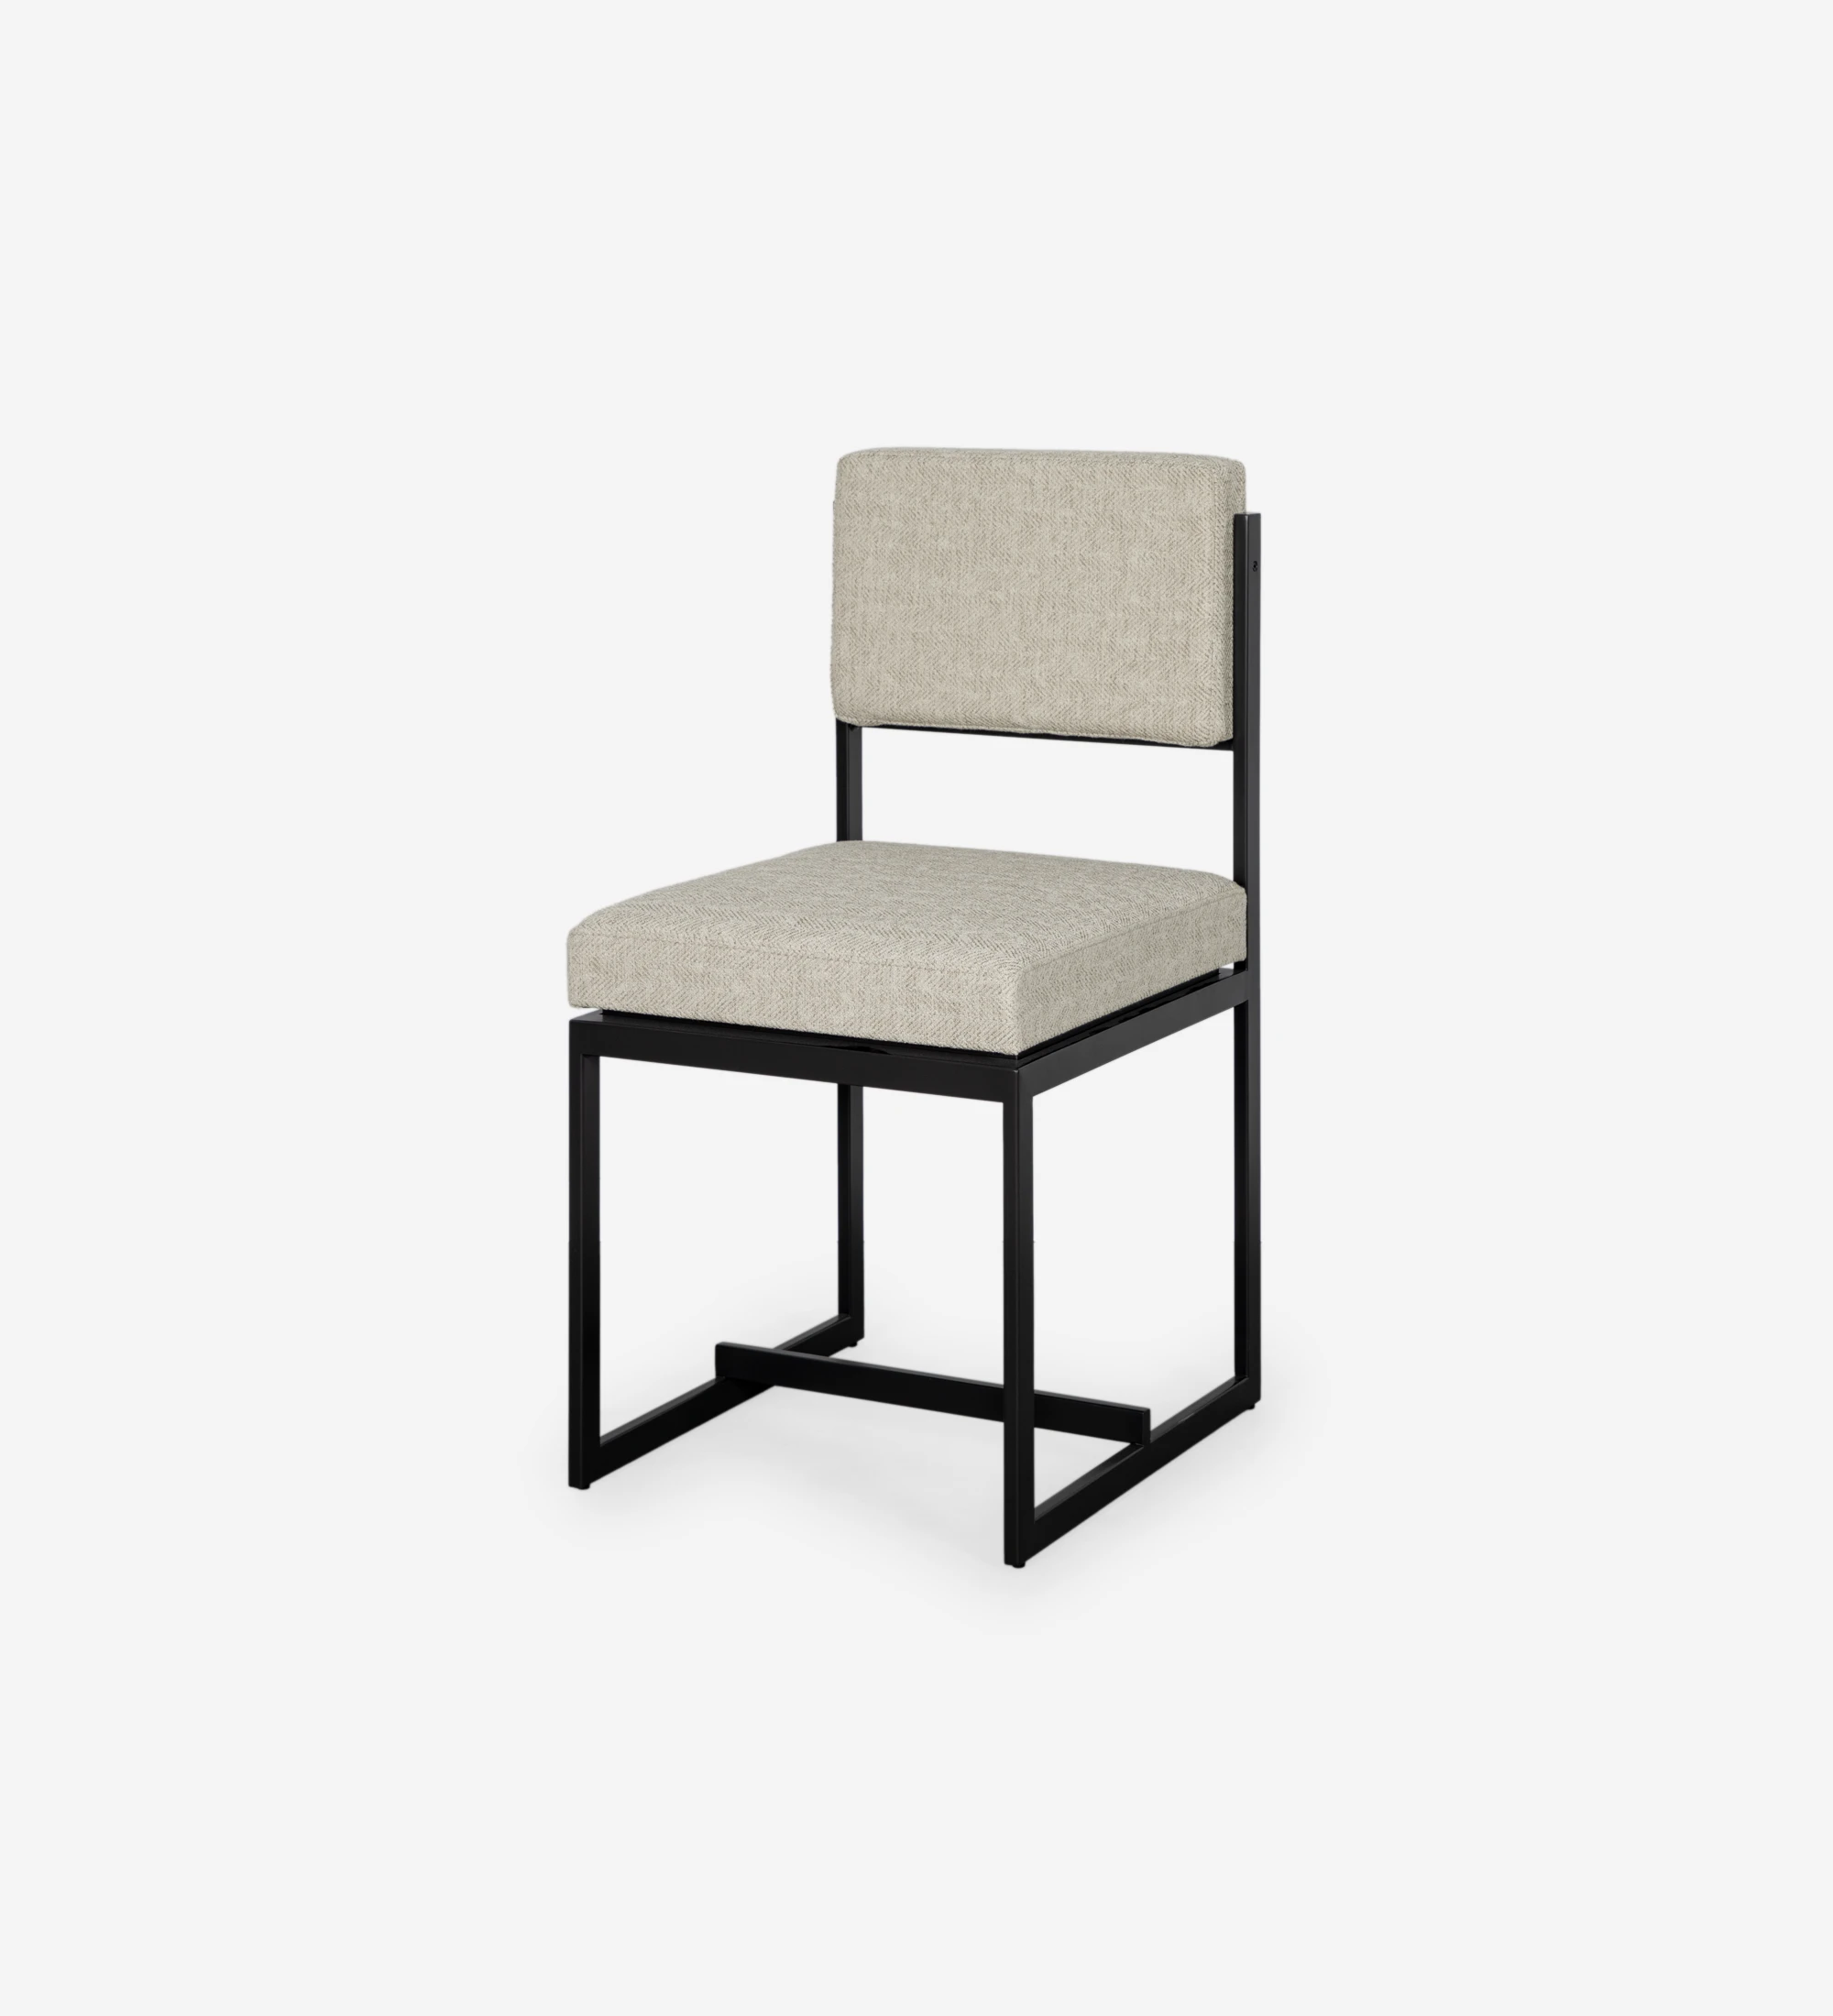 Chaise avec assise et dossier recouverts de tissu, avec structure en métal laqué noir